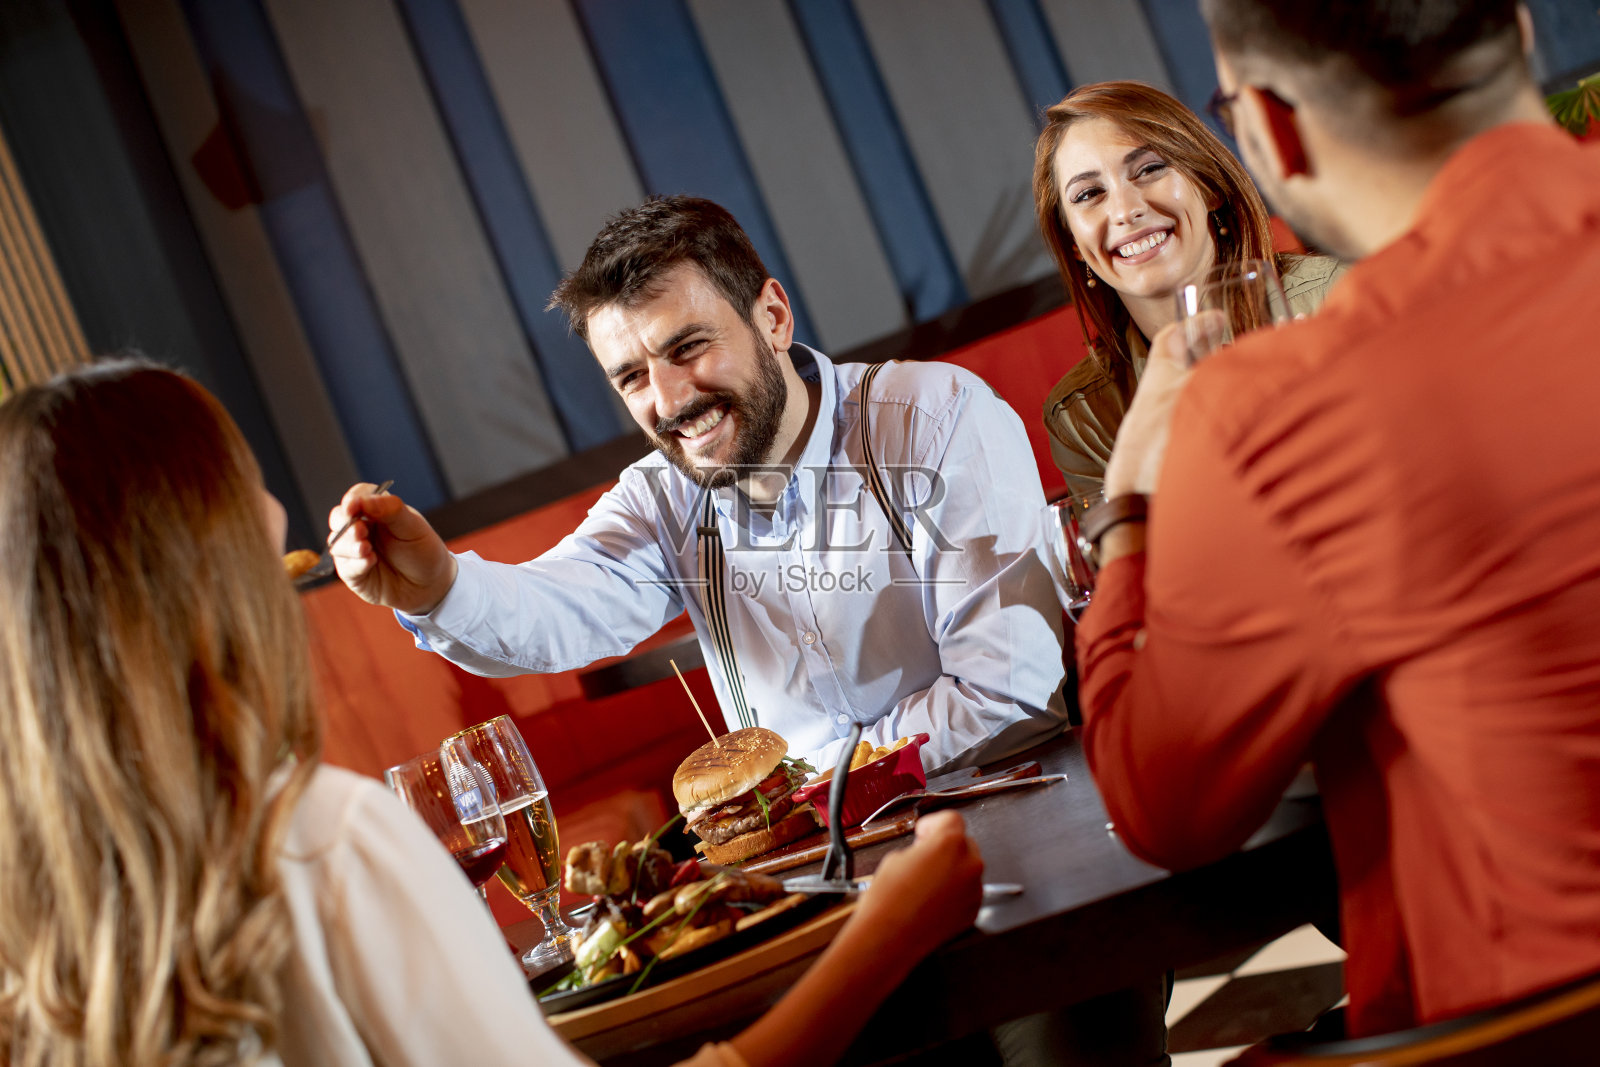 年轻人在餐厅吃饭照片摄影图片